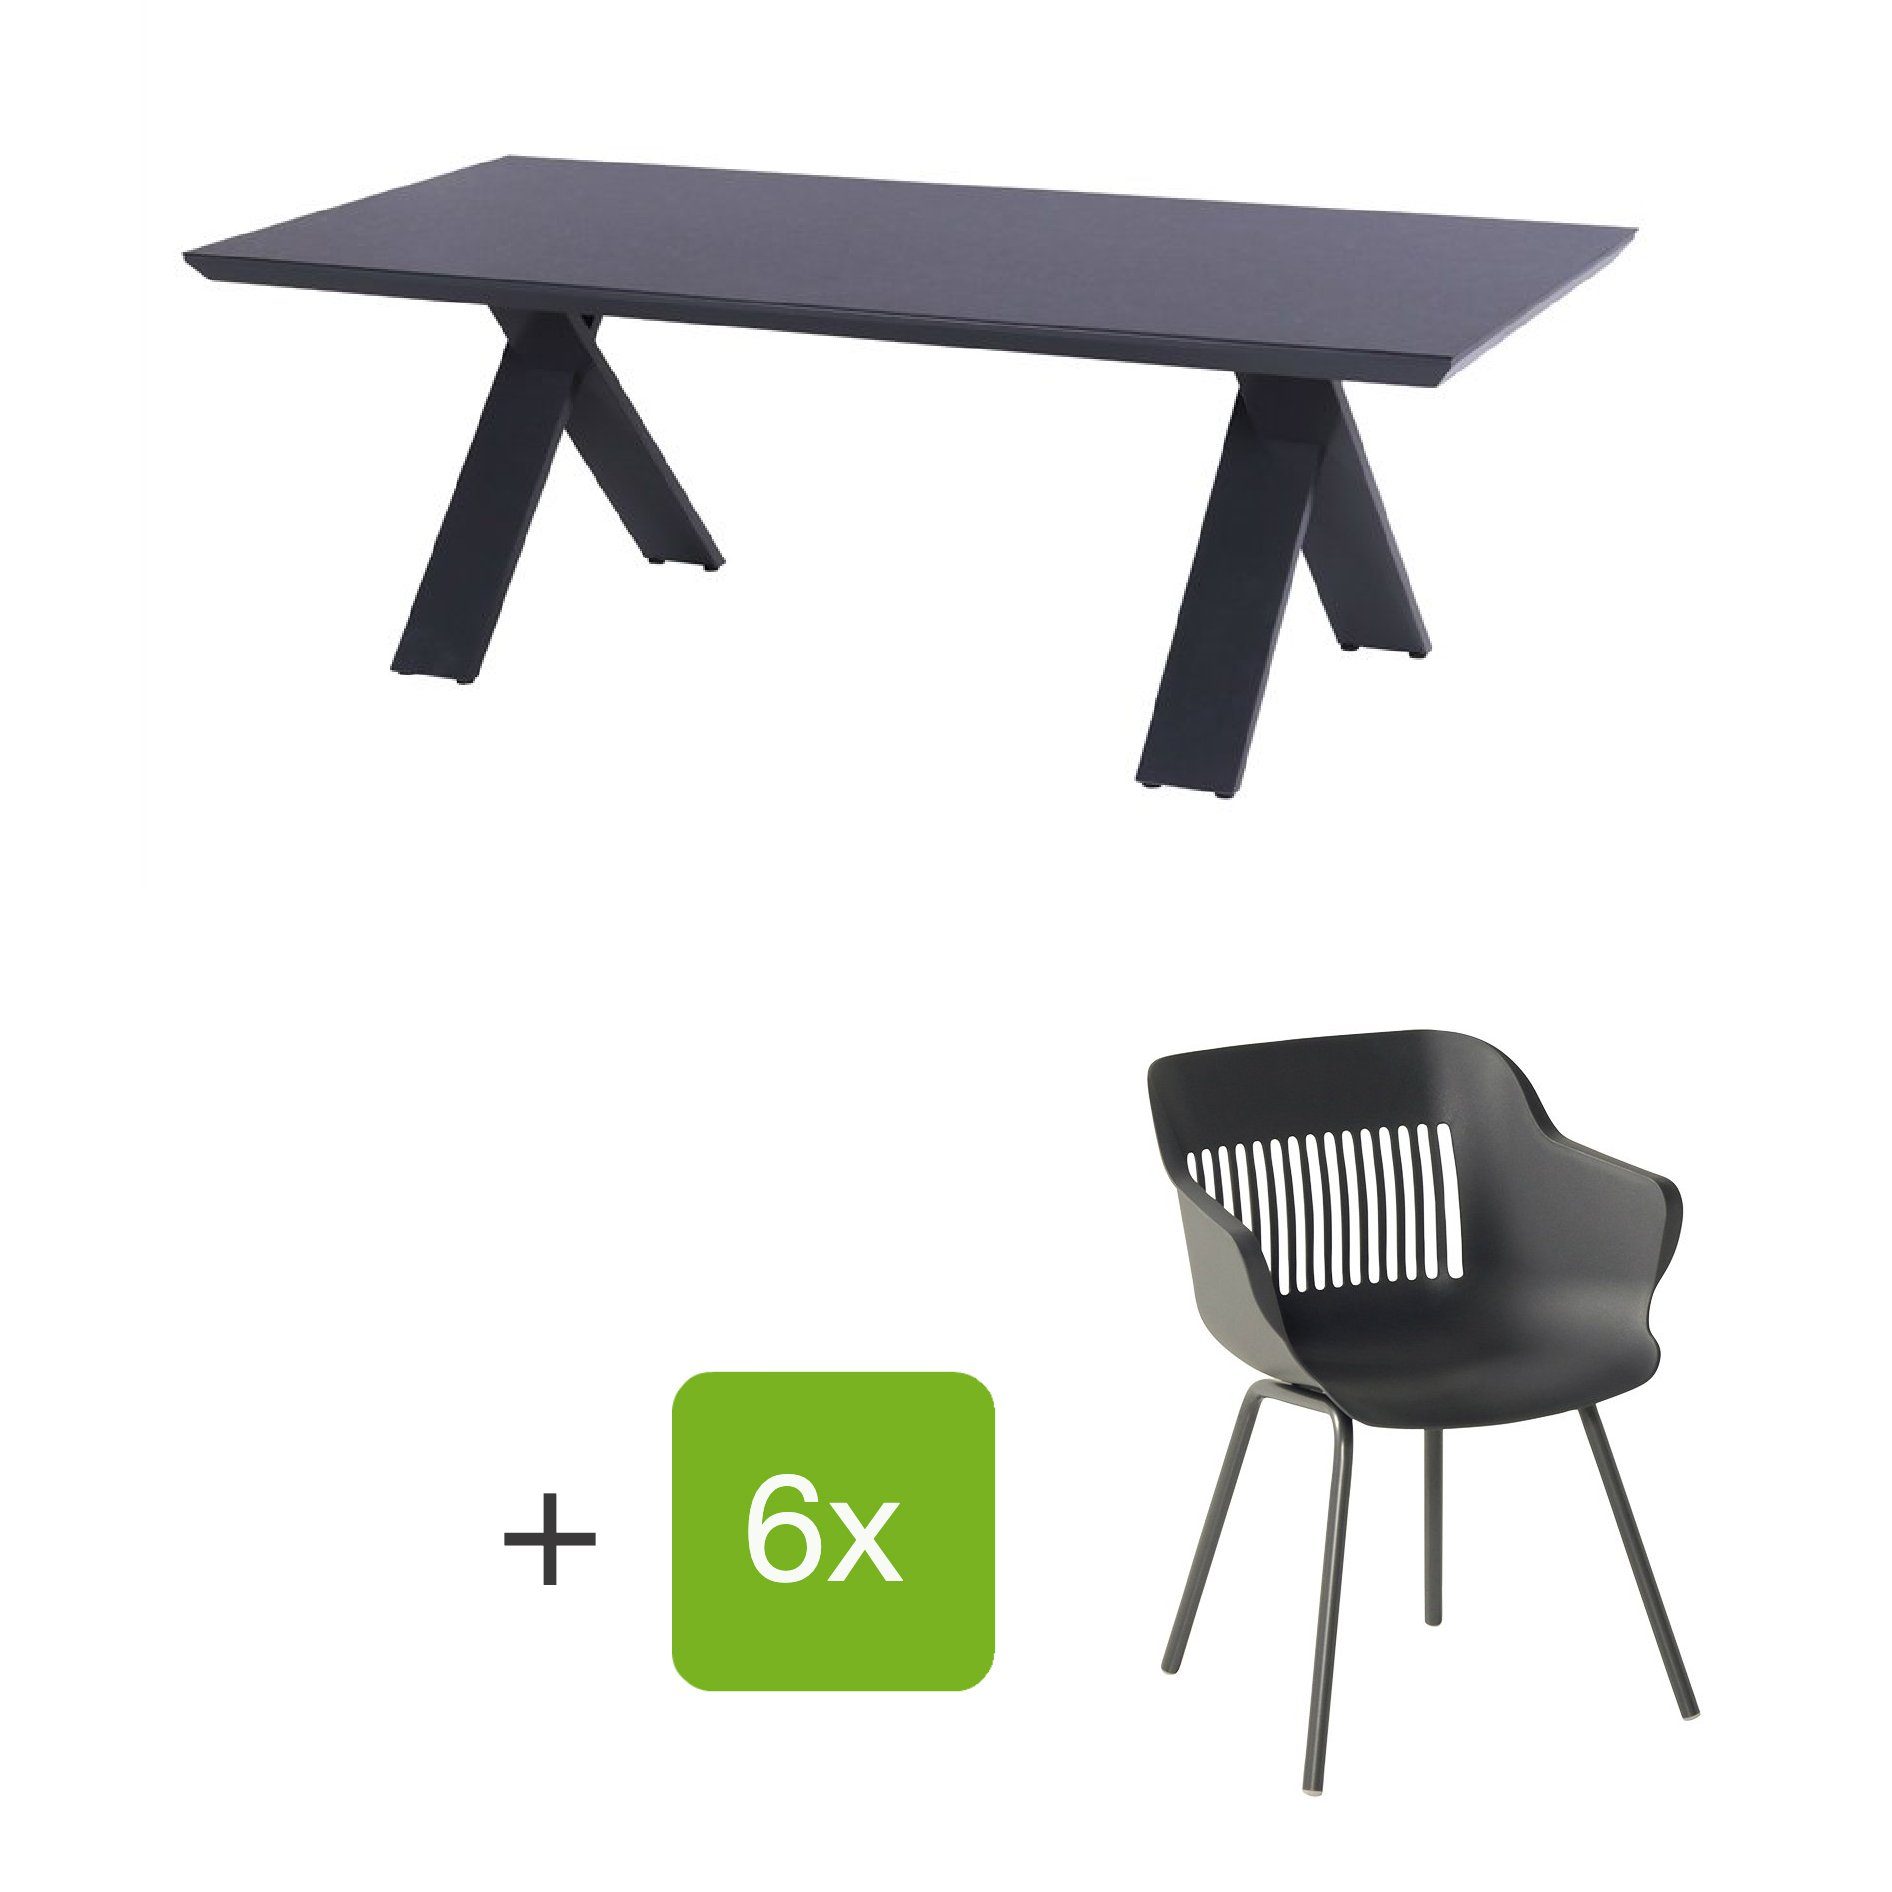 Hartman Gartenmöbel-Set mit Stuhl "Jill" und Gartentisch "Xanadu", Gestelle Aluminium xerix, Sitz Kunststoff xerix, Tischplatte HPL Anthrazit